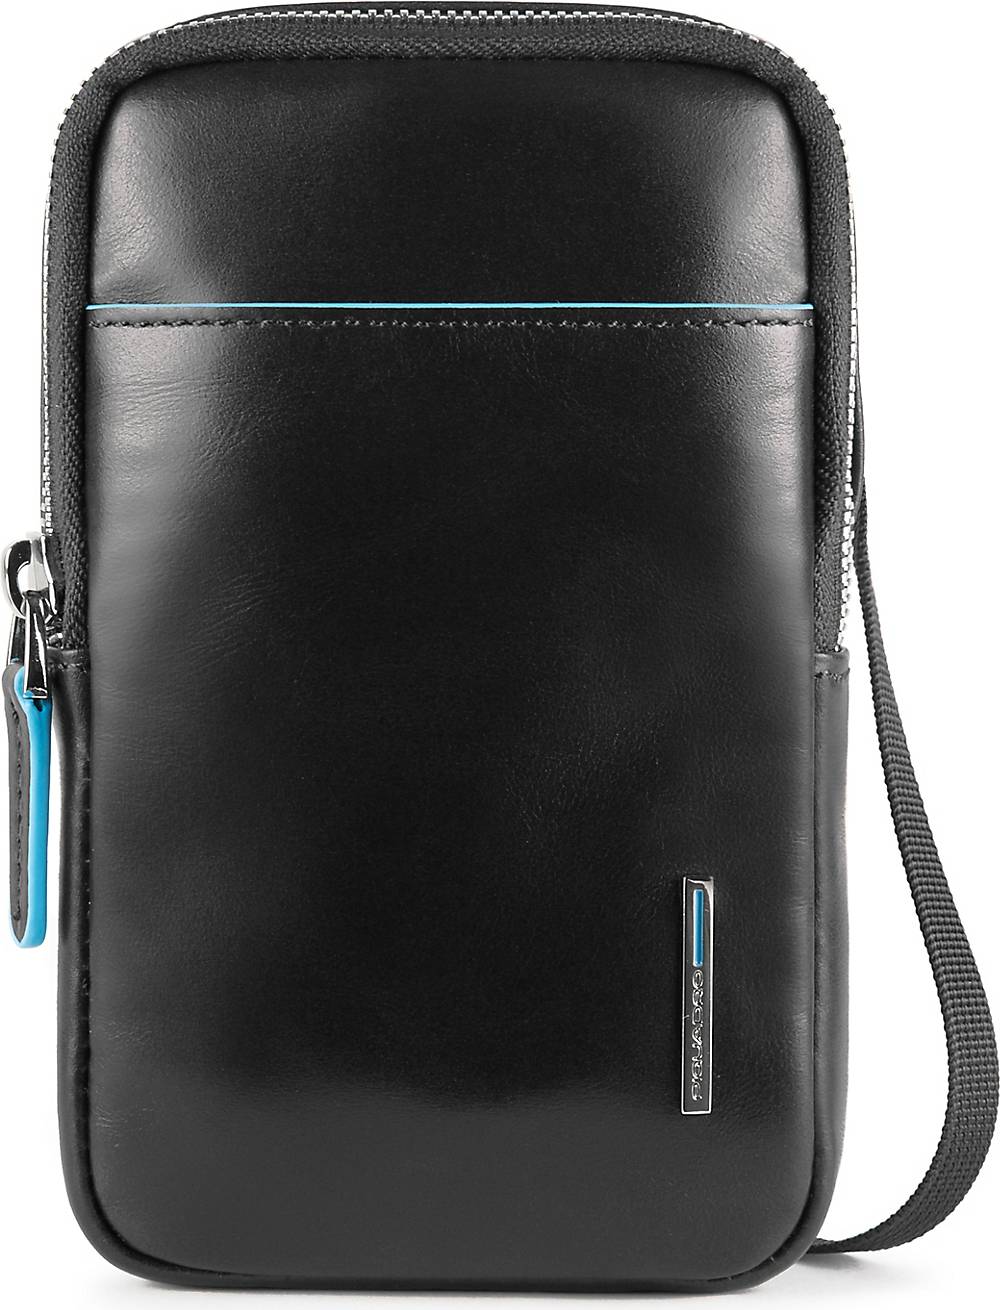 Piquadro, Blue Square Handytasche Rfid Leder 10 Cm in schwarz, Handyhüllen & Zubehör für Damen